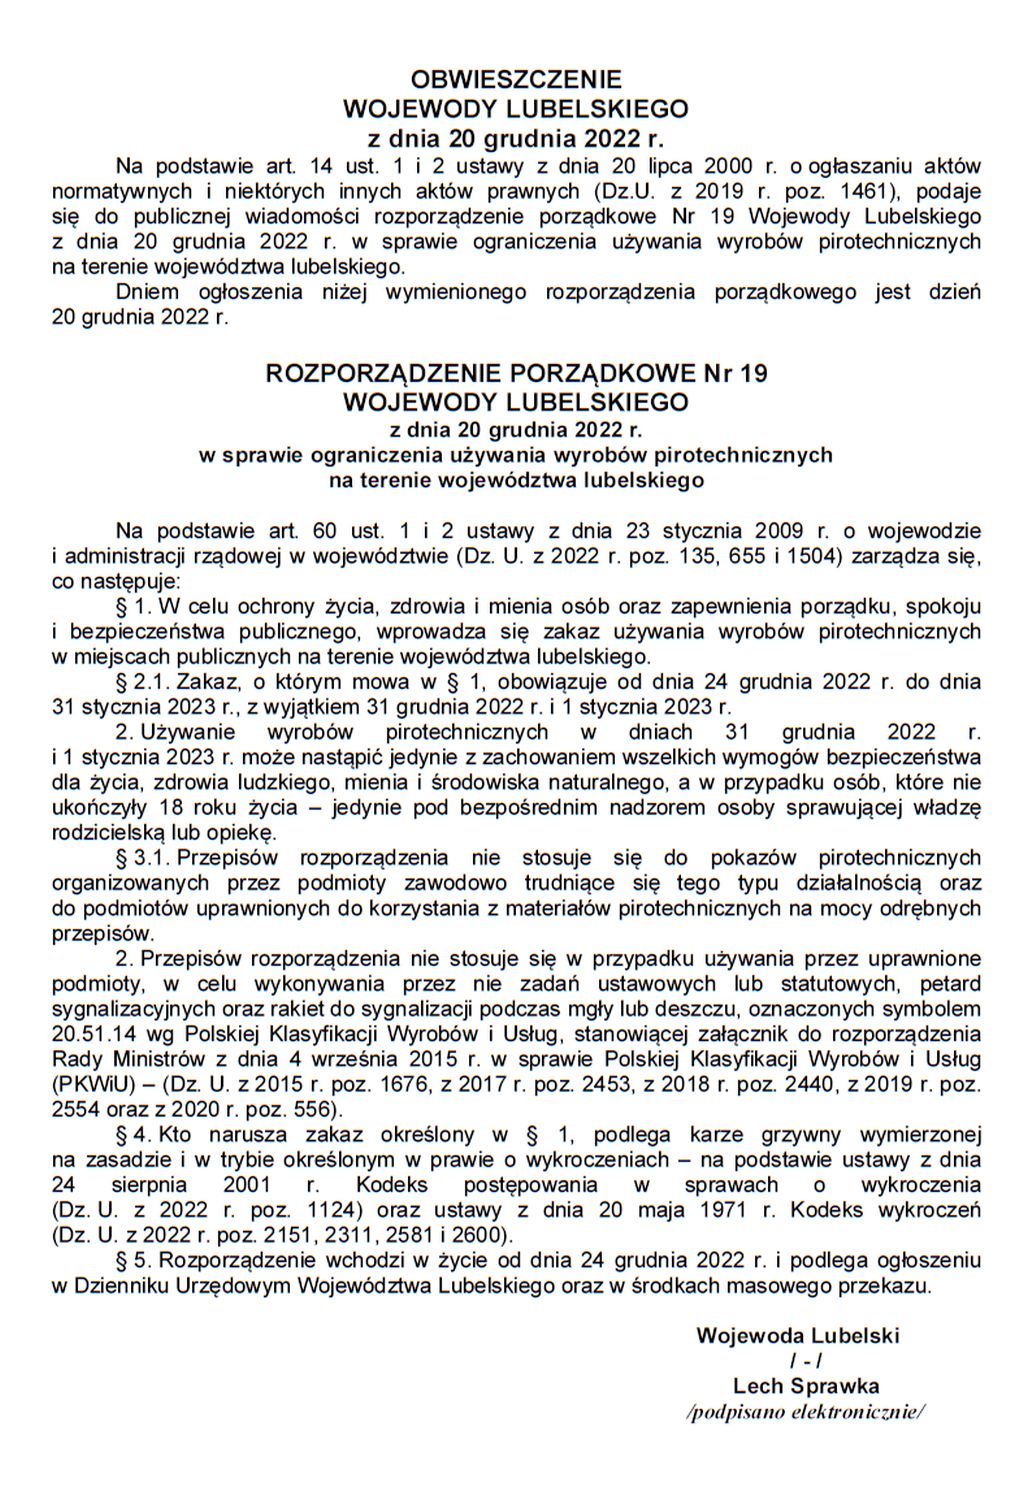 ROZPORZĄDZENIE PORZĄDKOWE Nr 19 WOJEWODY LUBELSKIEGO z dnia 20 grudnia 2022 r. w sprawie ograniczenia używania wyrobów pirotechnicznych na terenie województwa lubelskiego